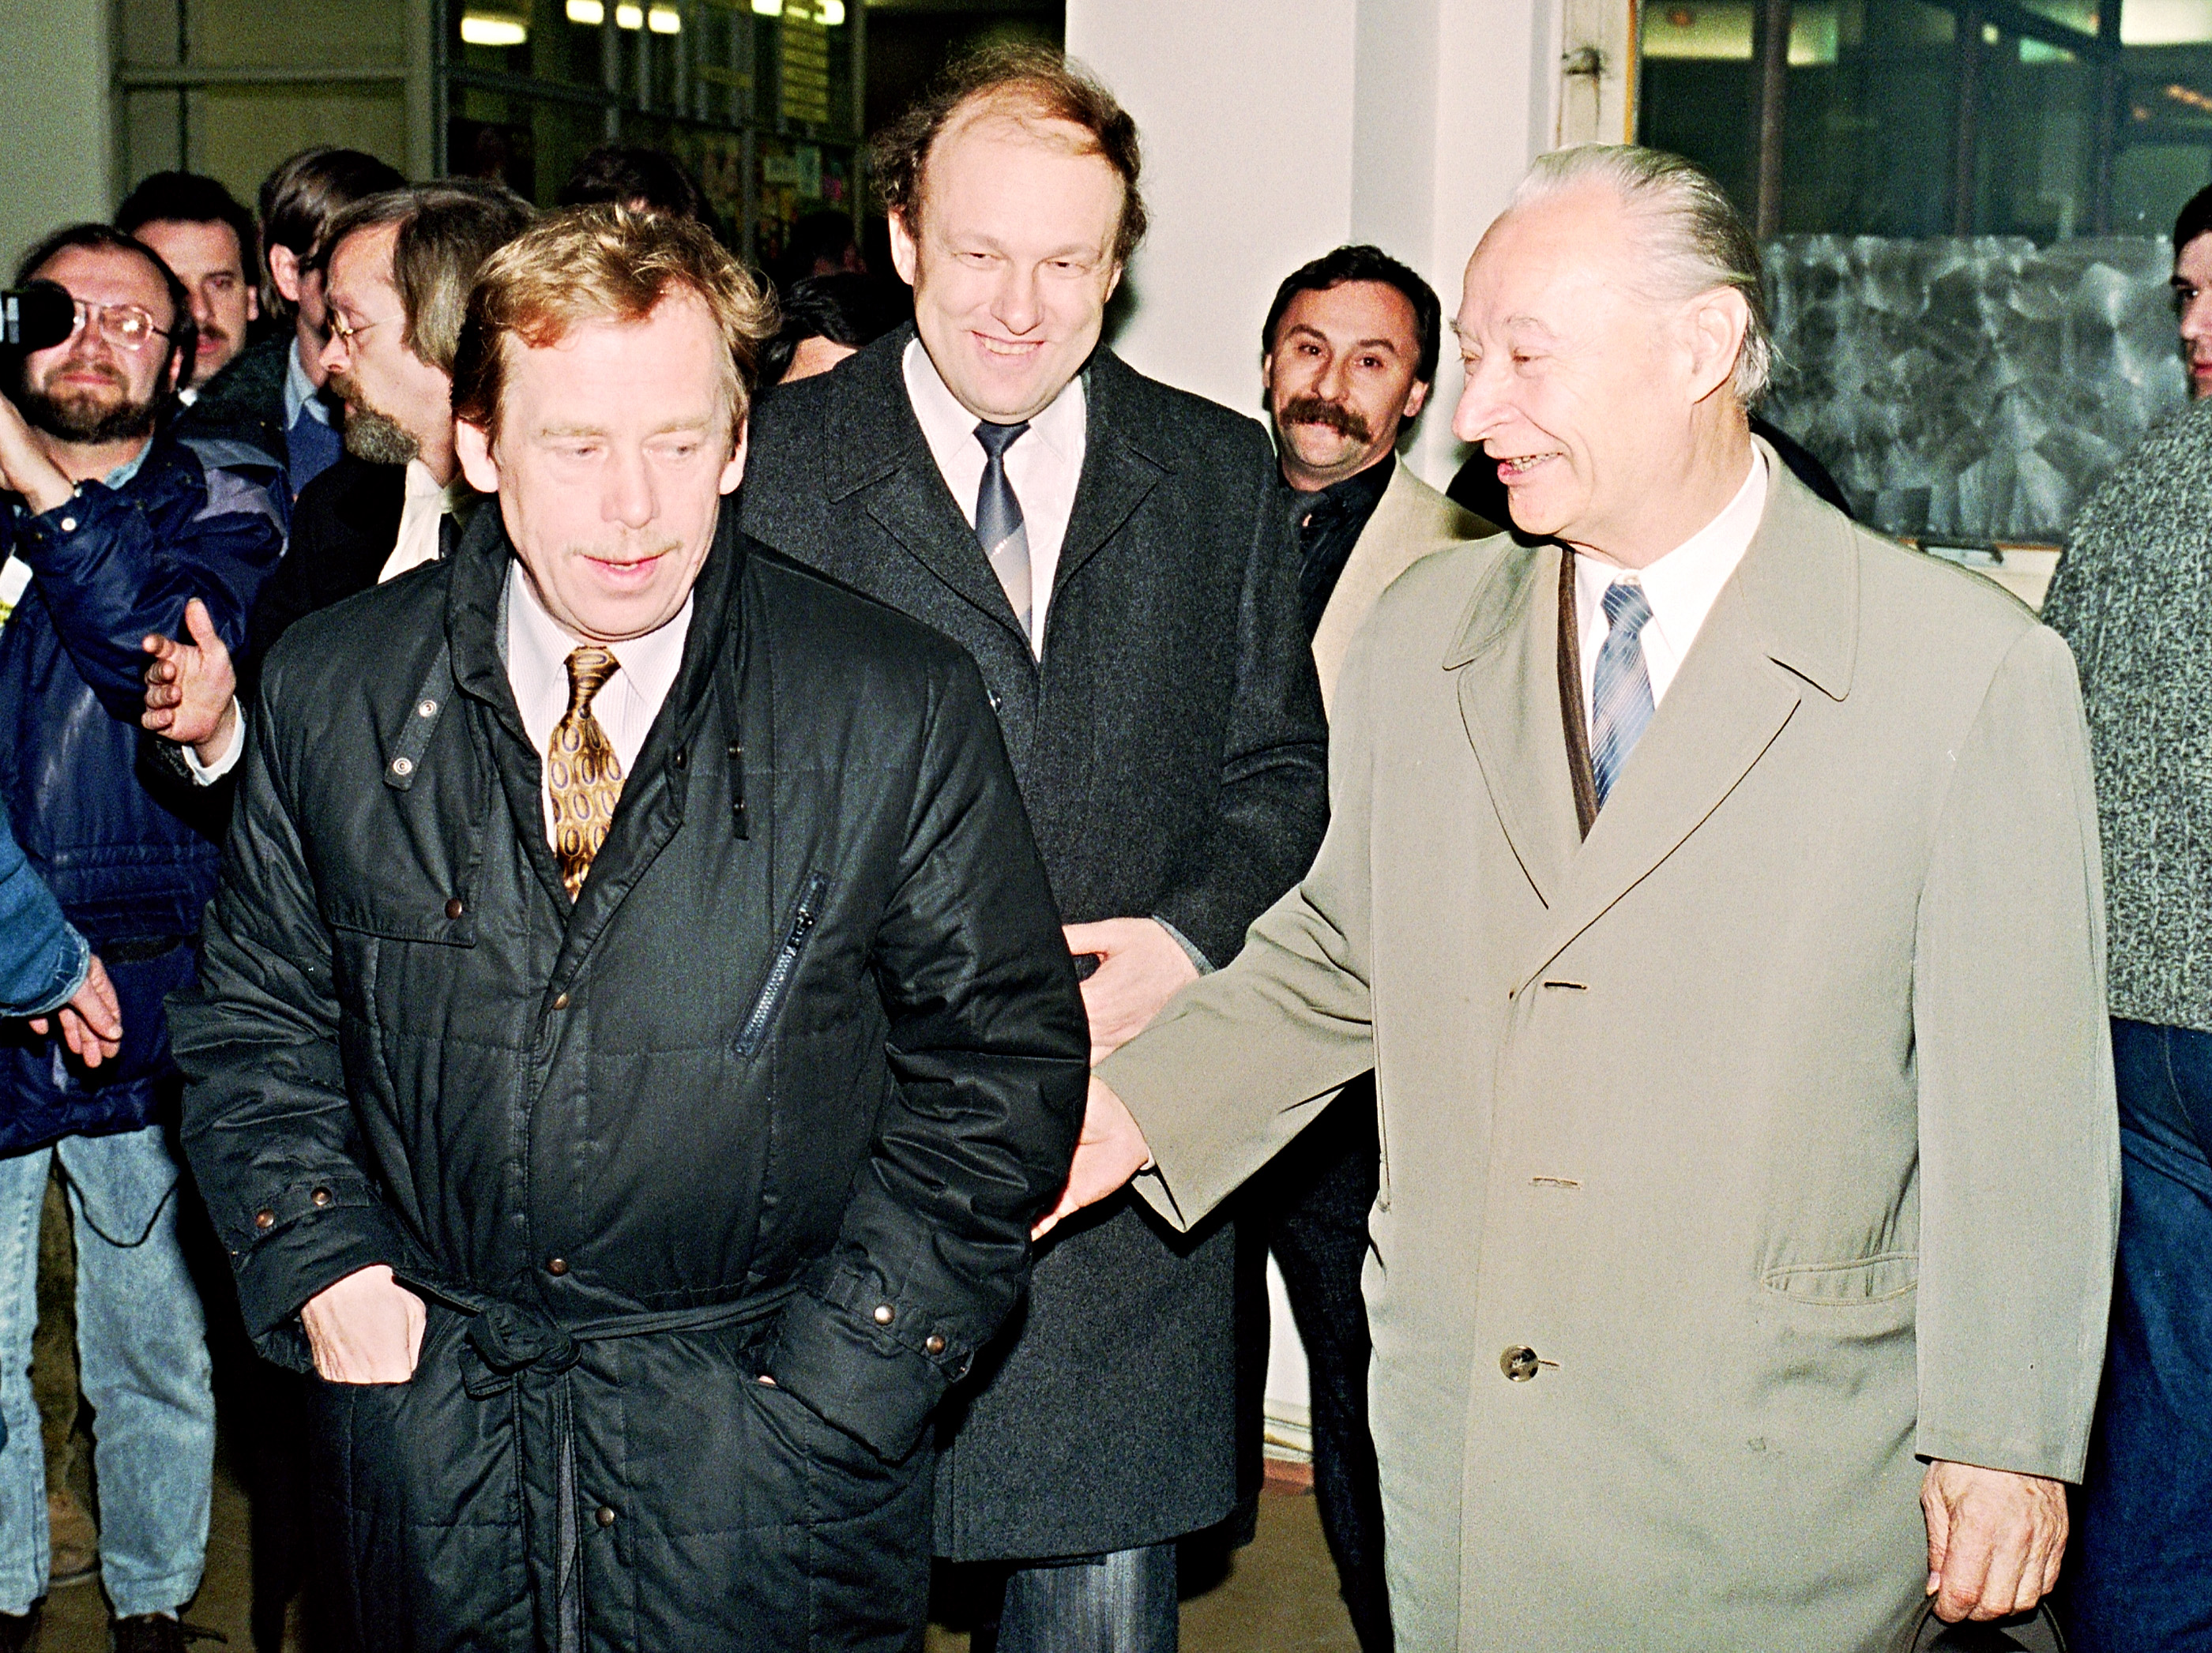 Balra Vaclav Havel csehszlovák elnök, jobbra Alexander Dubcek, aki akkor már felszabadultan tudott mosolyogni.